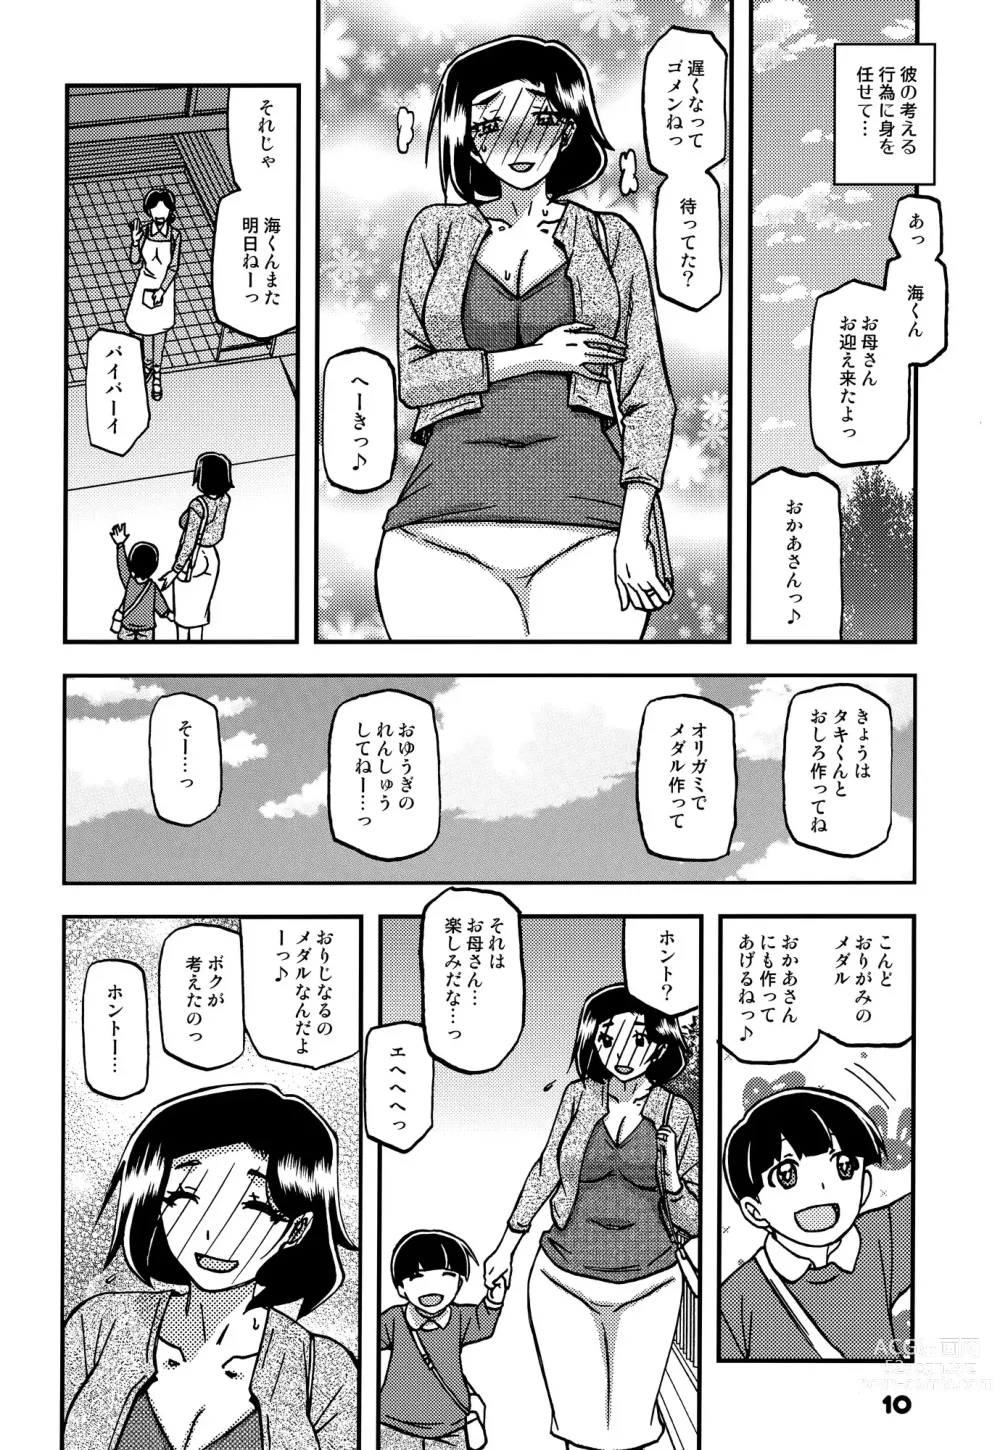 Page 9 of doujinshi Akebi no Mi - Misora AFTER